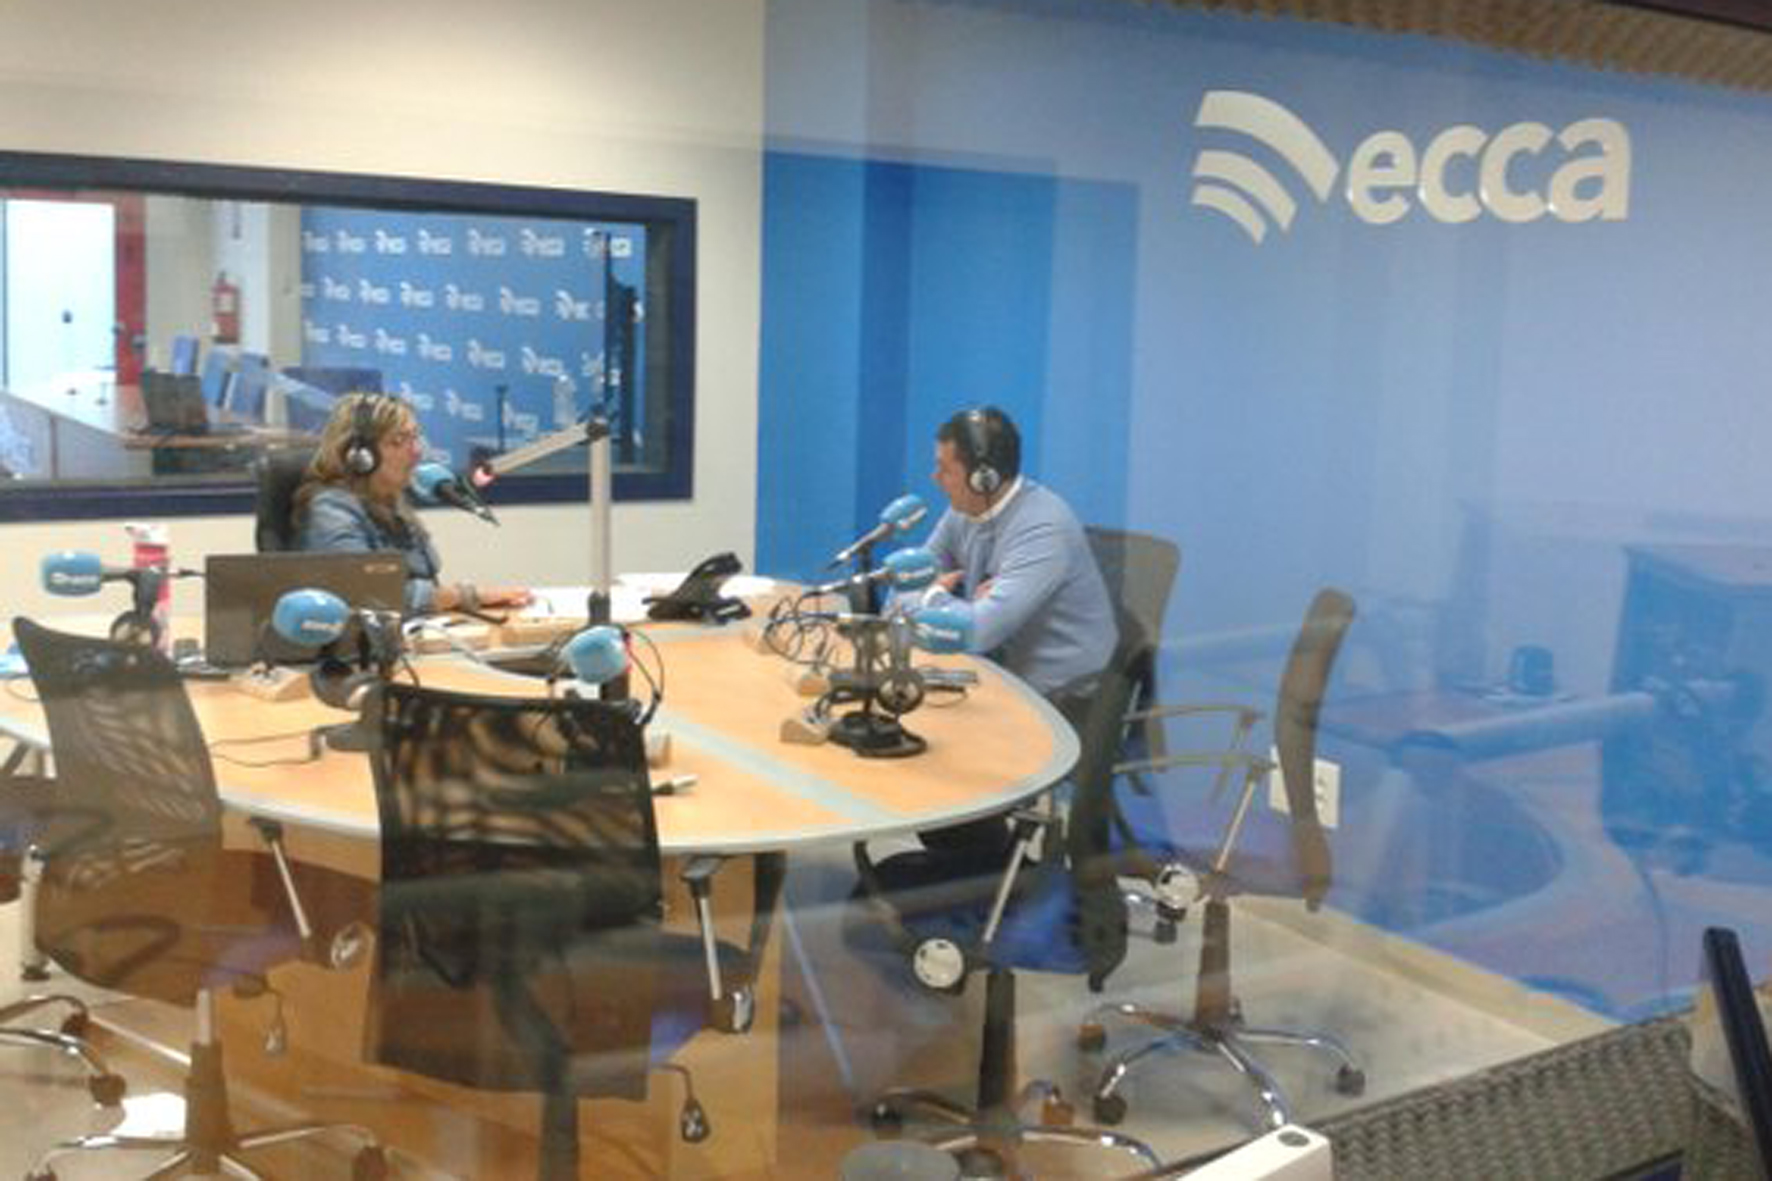 Radio ECCA imparte formación a más de un centenar de alumnos anualmente en El Hierro